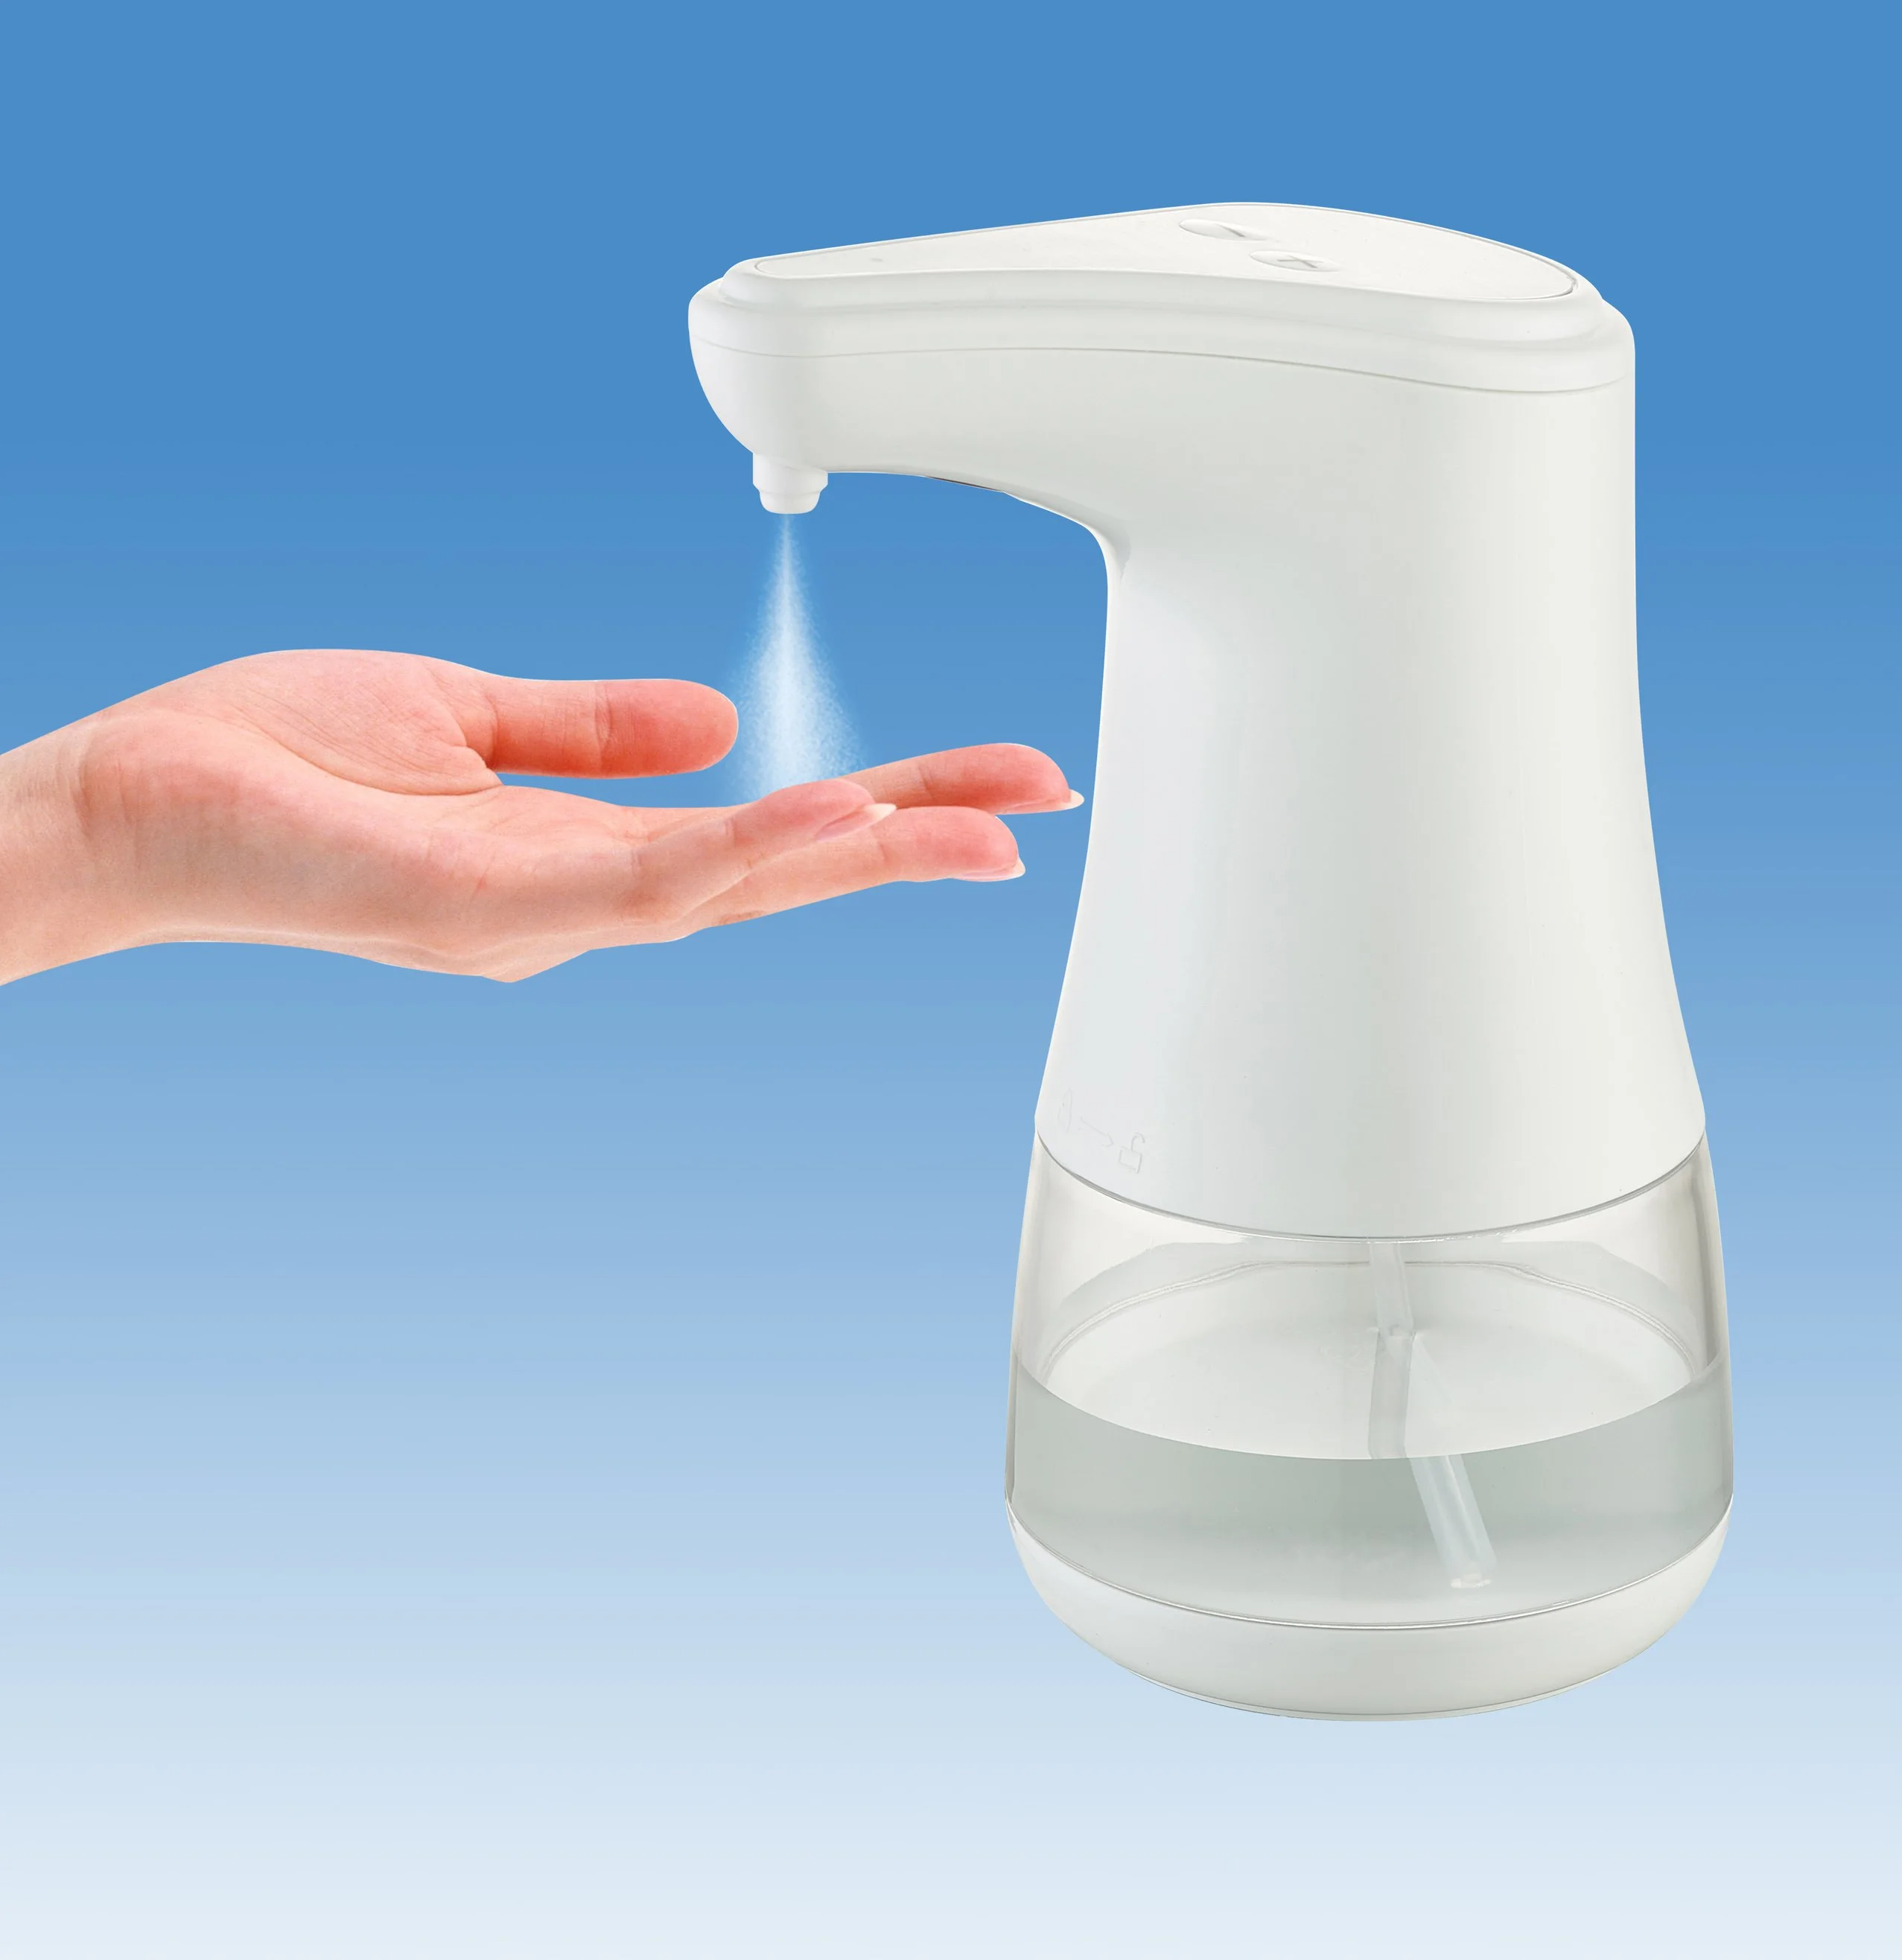 Automatic Soap Dispenser, Hand Sanitizer Dispenser, Desktop Touchless Fy-0080